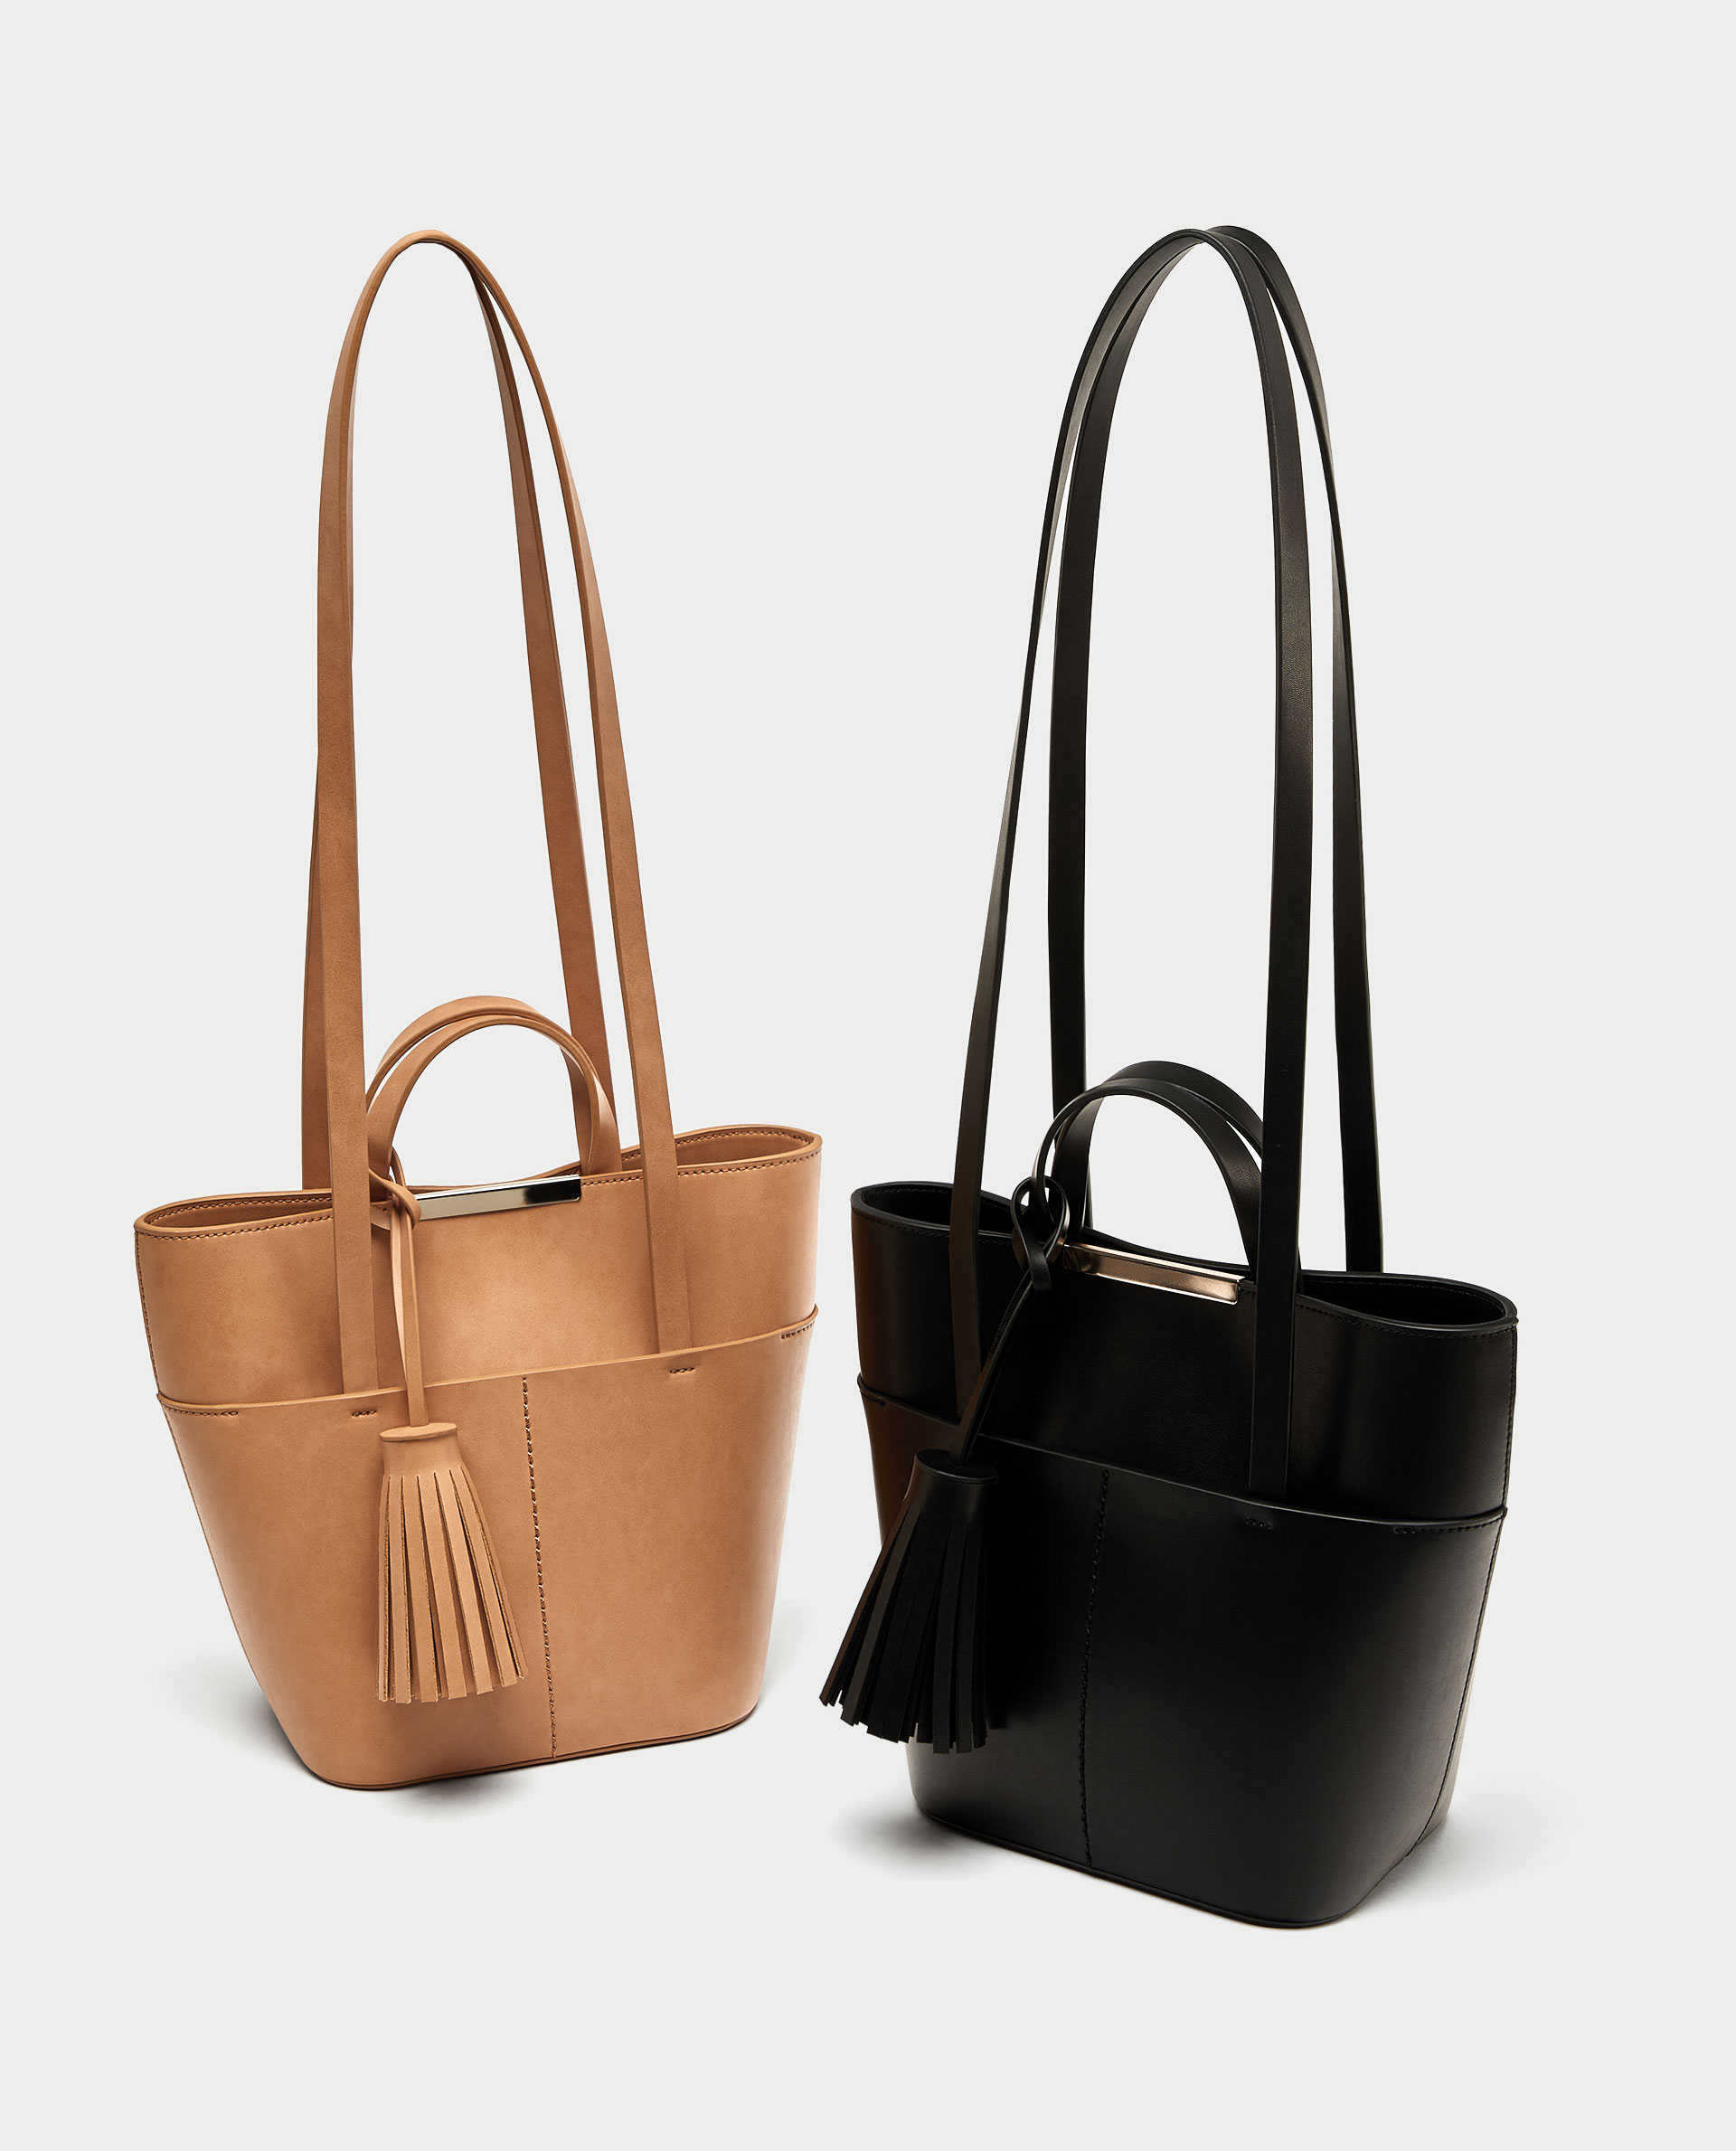 Necesidad de tener ya el bolso low cost de Zara inspirado en dos diseños de  Tous y B